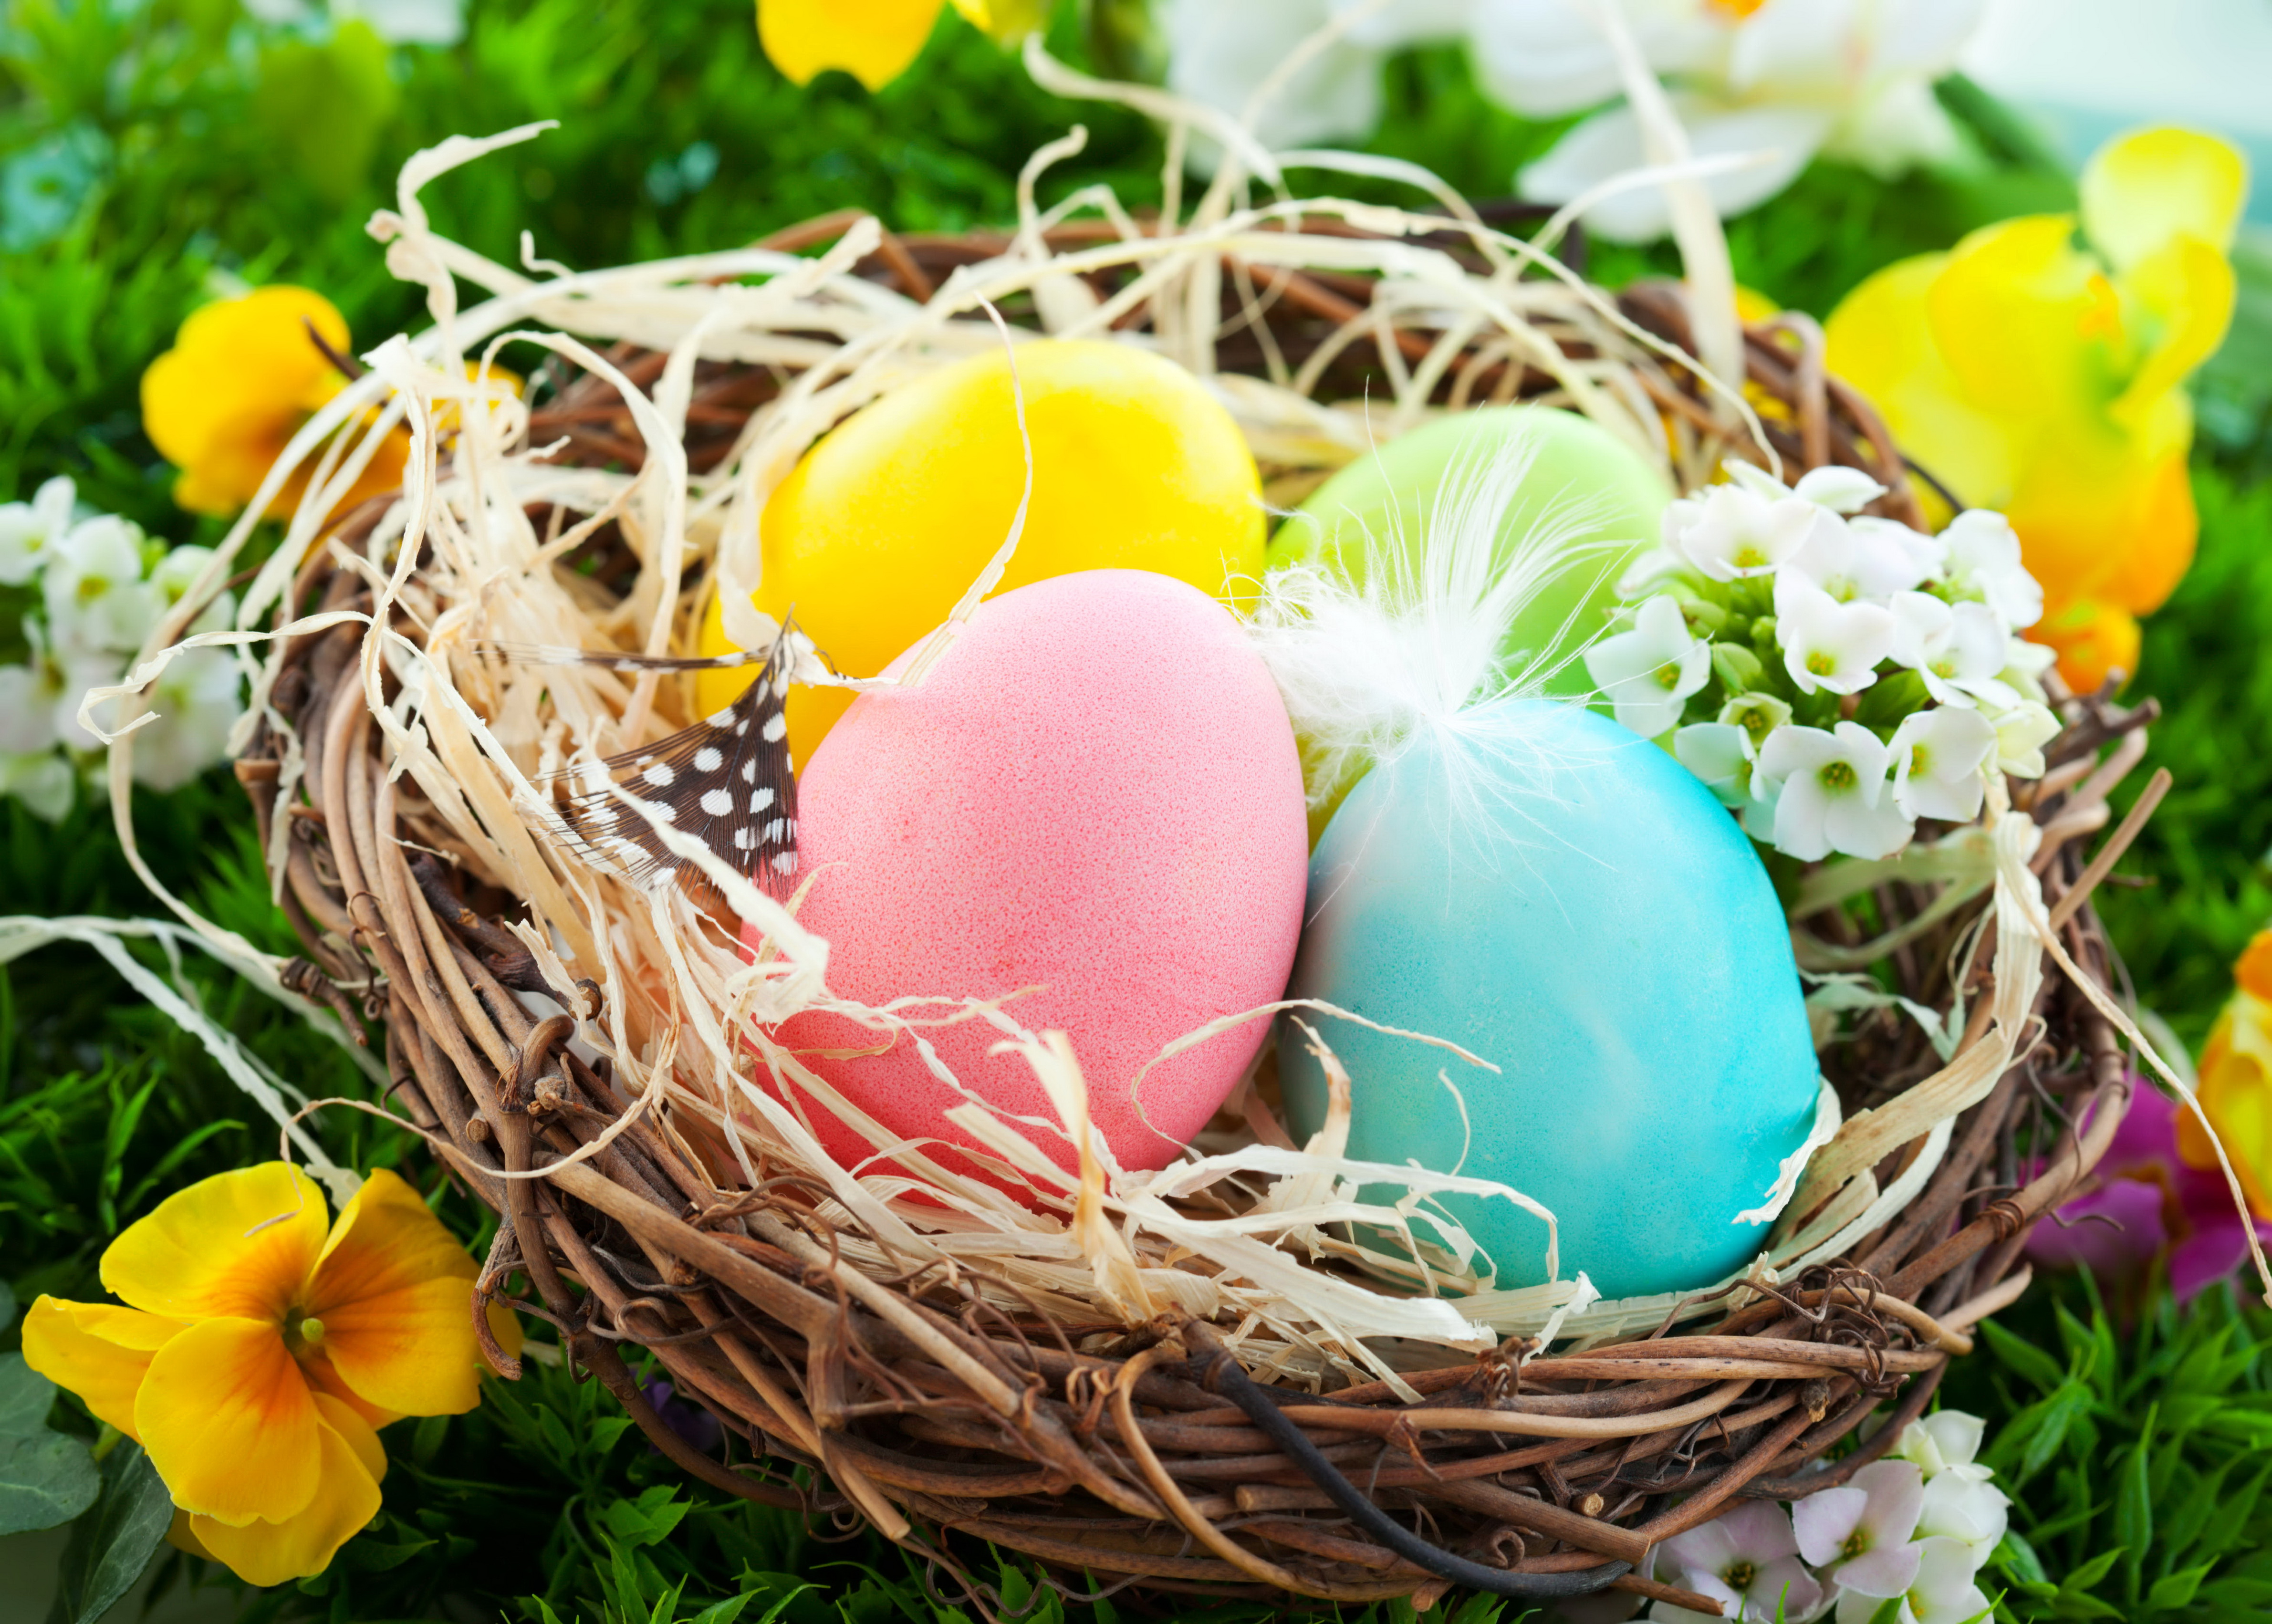 Пасха очень красиво. Пасхальное яйцо. Пасхальная корзинка для яиц. Пасхальные цветы. Пасхальные яйца в гнезде.